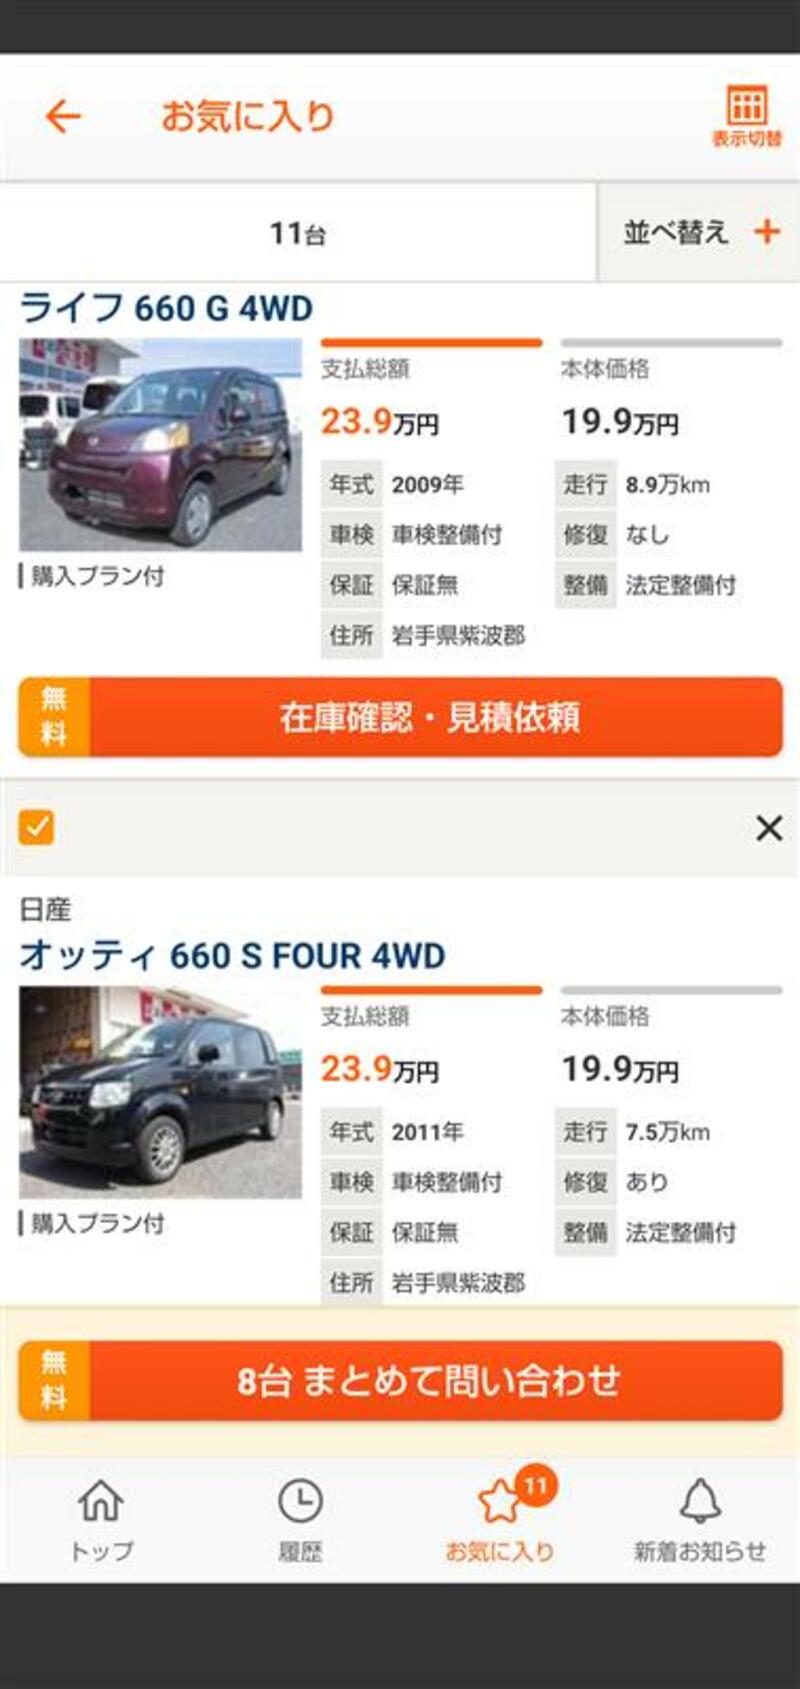 ダイハツ ミラココア X スペシャル_4WD(CVT_0.66)